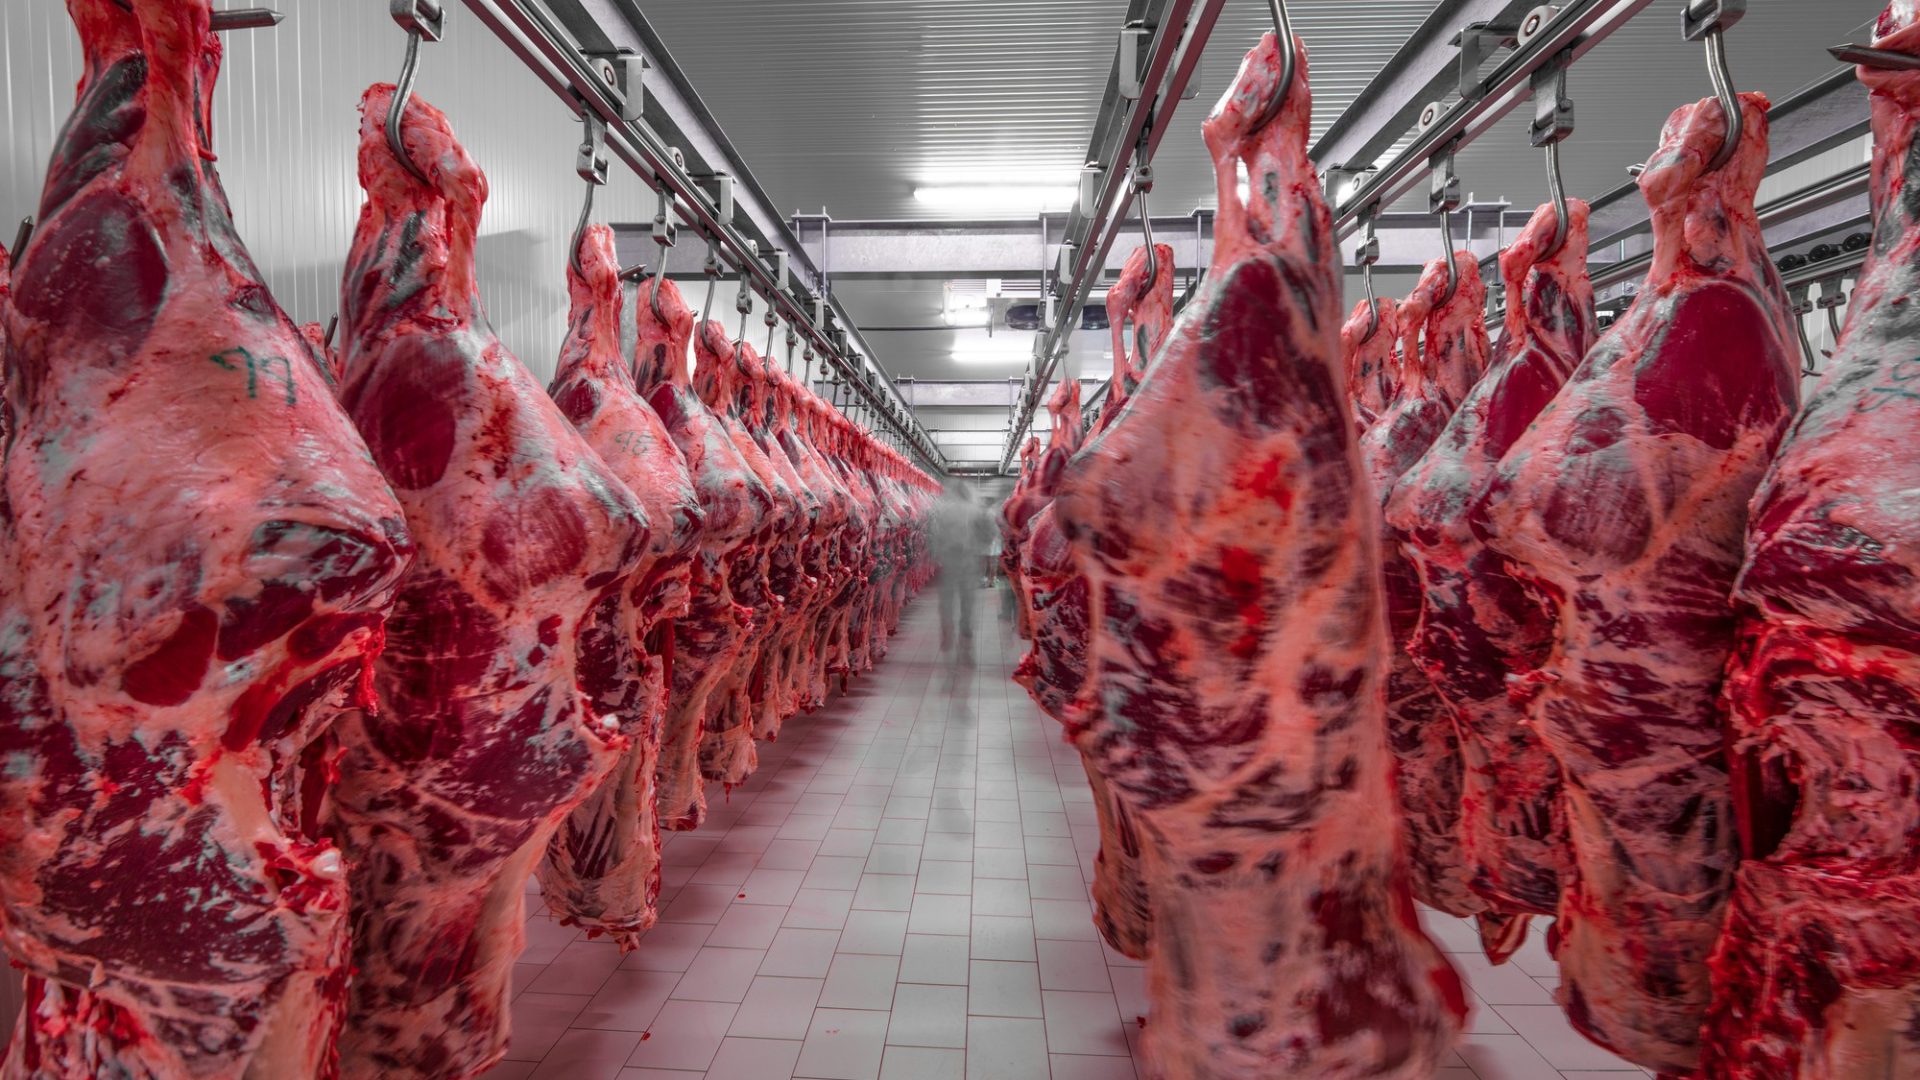 Rinnovabili • Finanziamenti industria carne: +15% in 4 anni, trend insostenibile